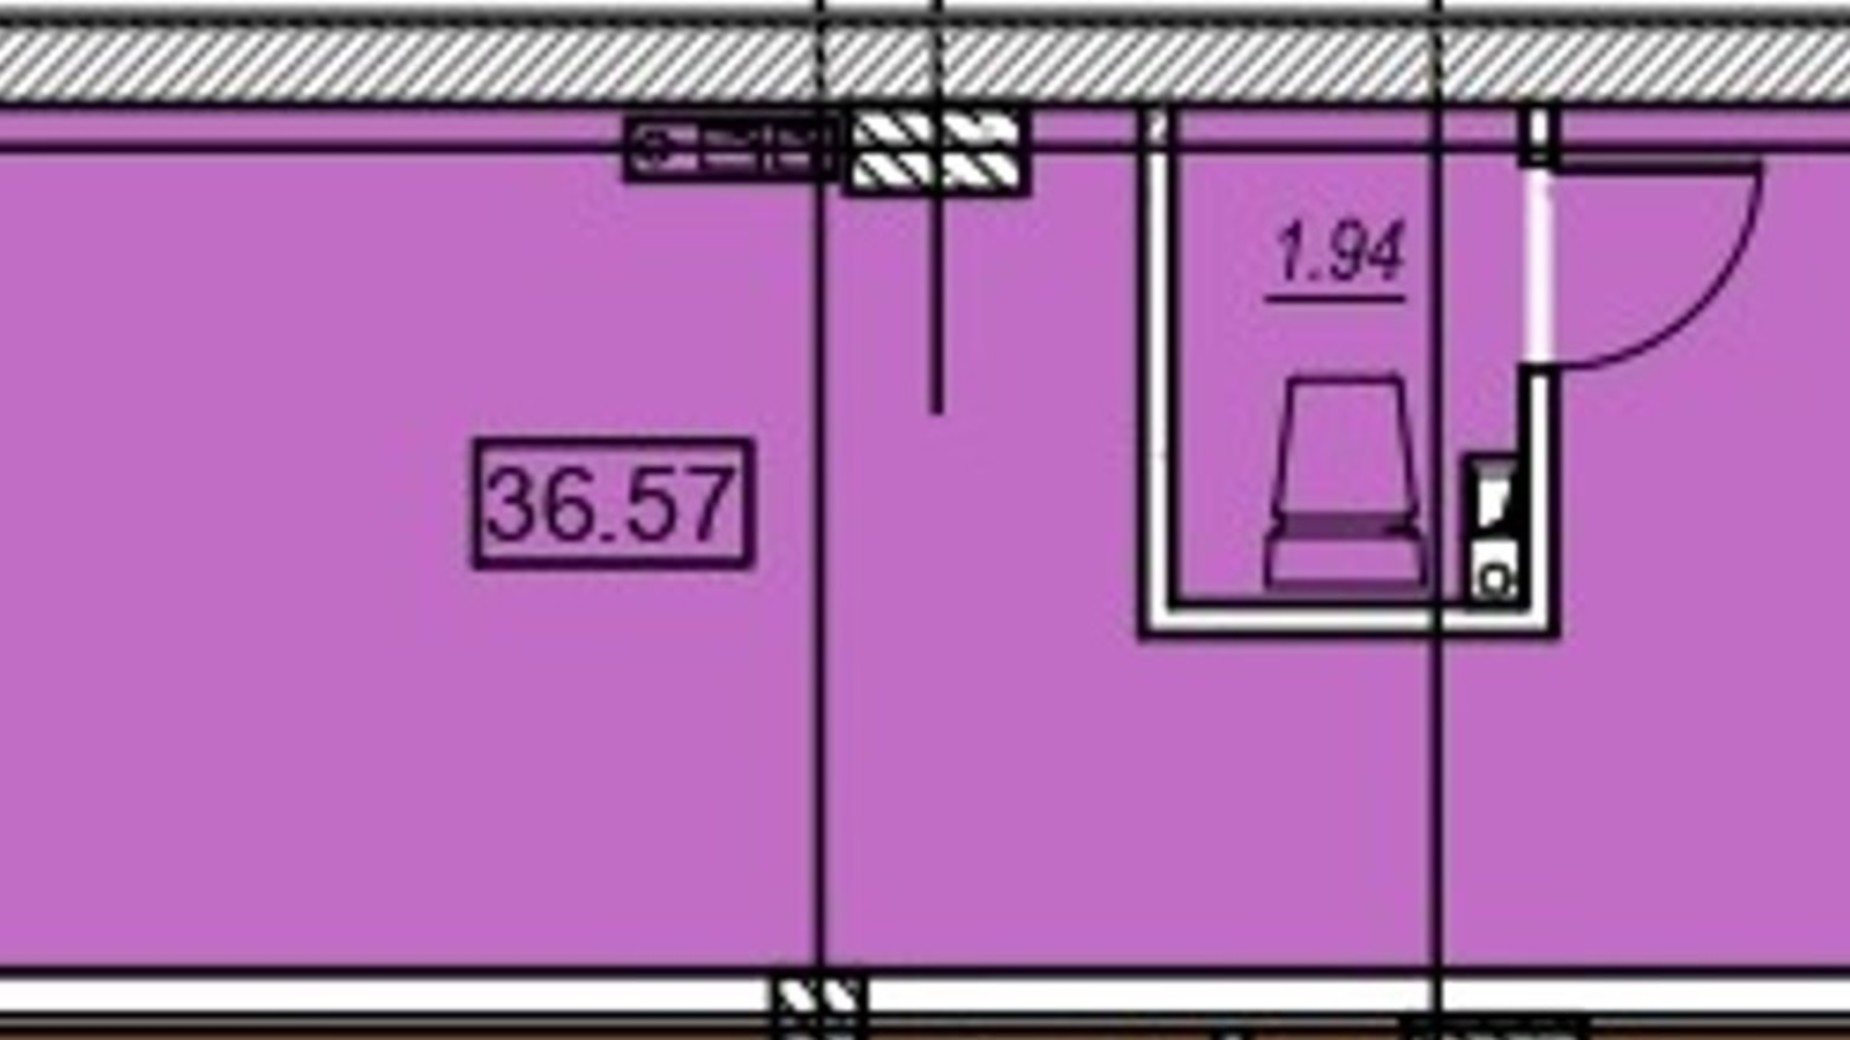 Планировка помещения в ЖК Меридиан 36.57 м², фото 487758